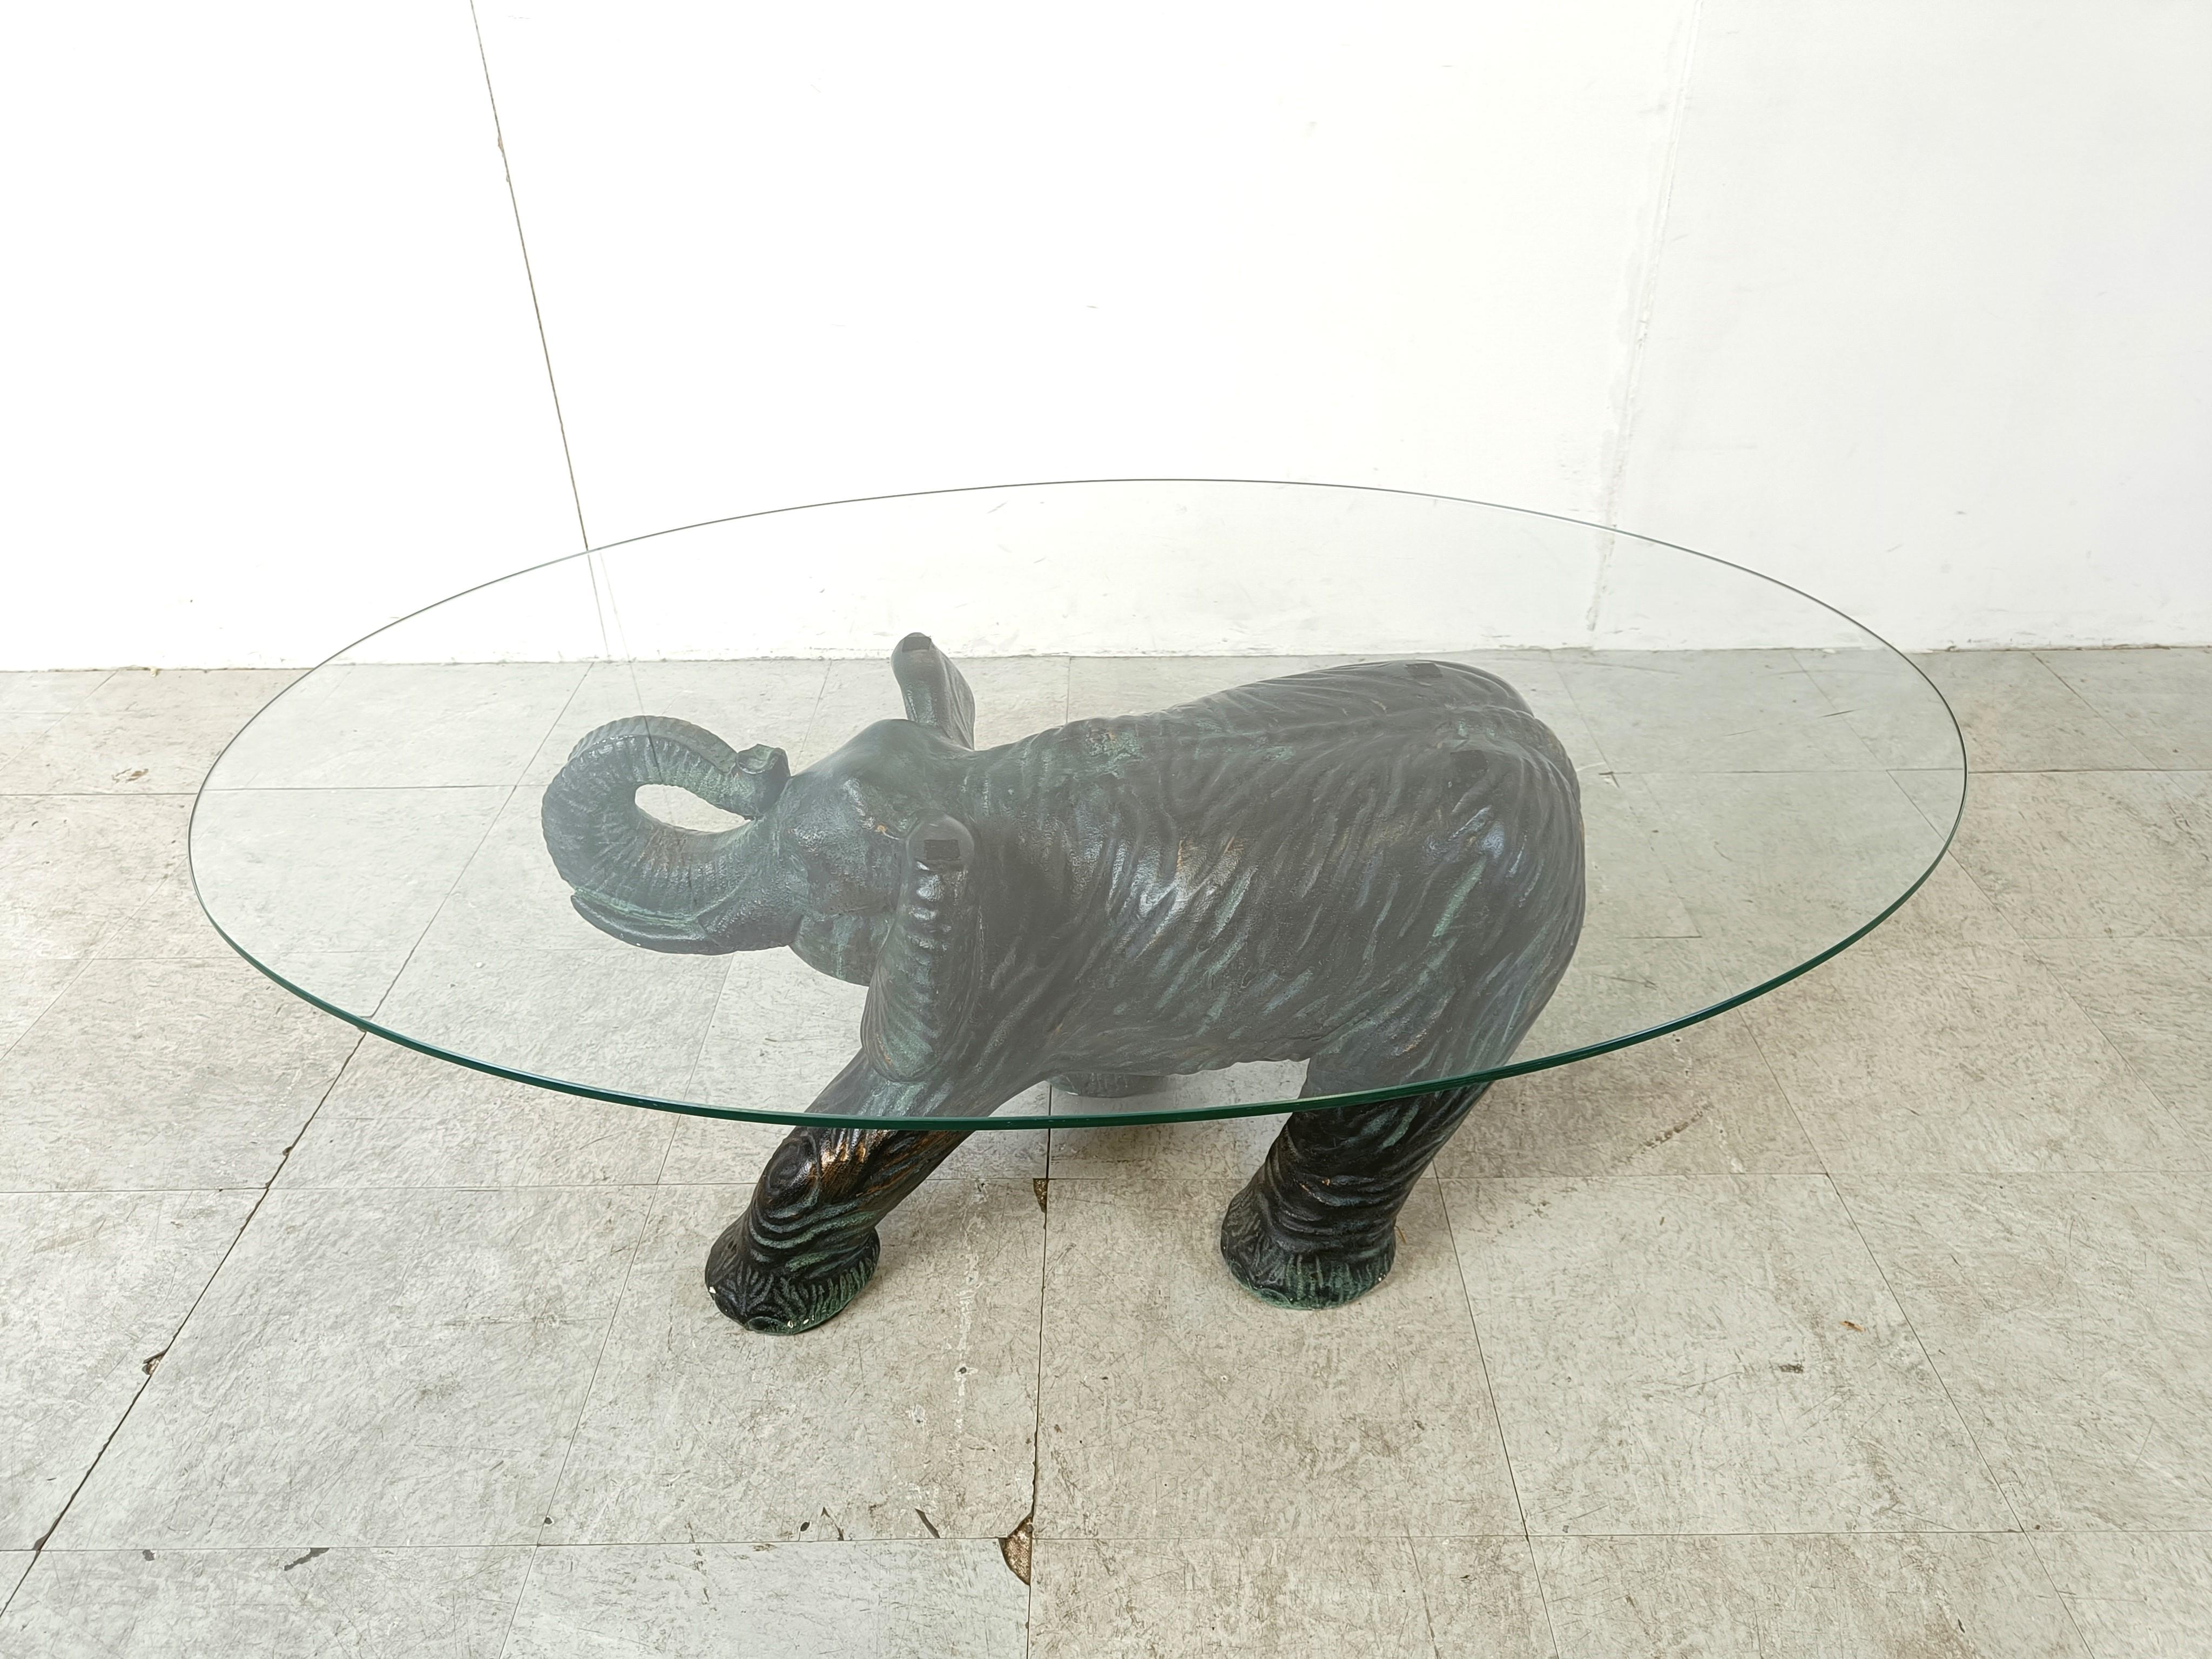 
Eleganter Elefanten-Couchtisch aus Gips mit einer ovalen Glasplatte. 

Schöner skulpturaler Tischsockel.

Sehr guter Zustand.

1970er Jahre - Belgien

Abmessungen Basis:
Höhe: 40cm/15.74